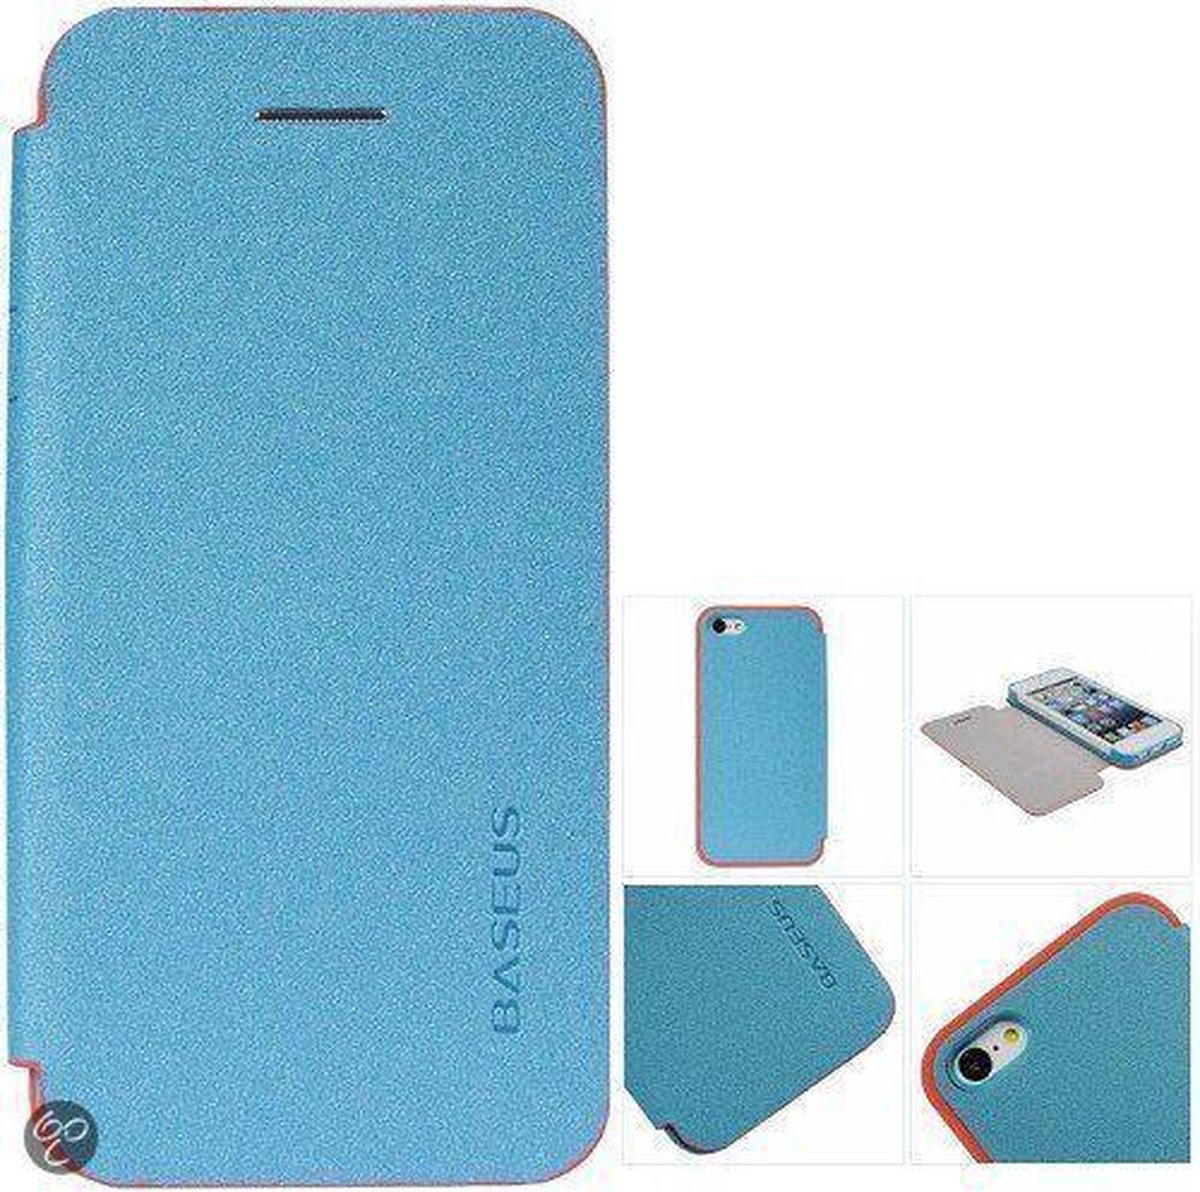 Baseus Magical Case voor iPhone 5C blauw